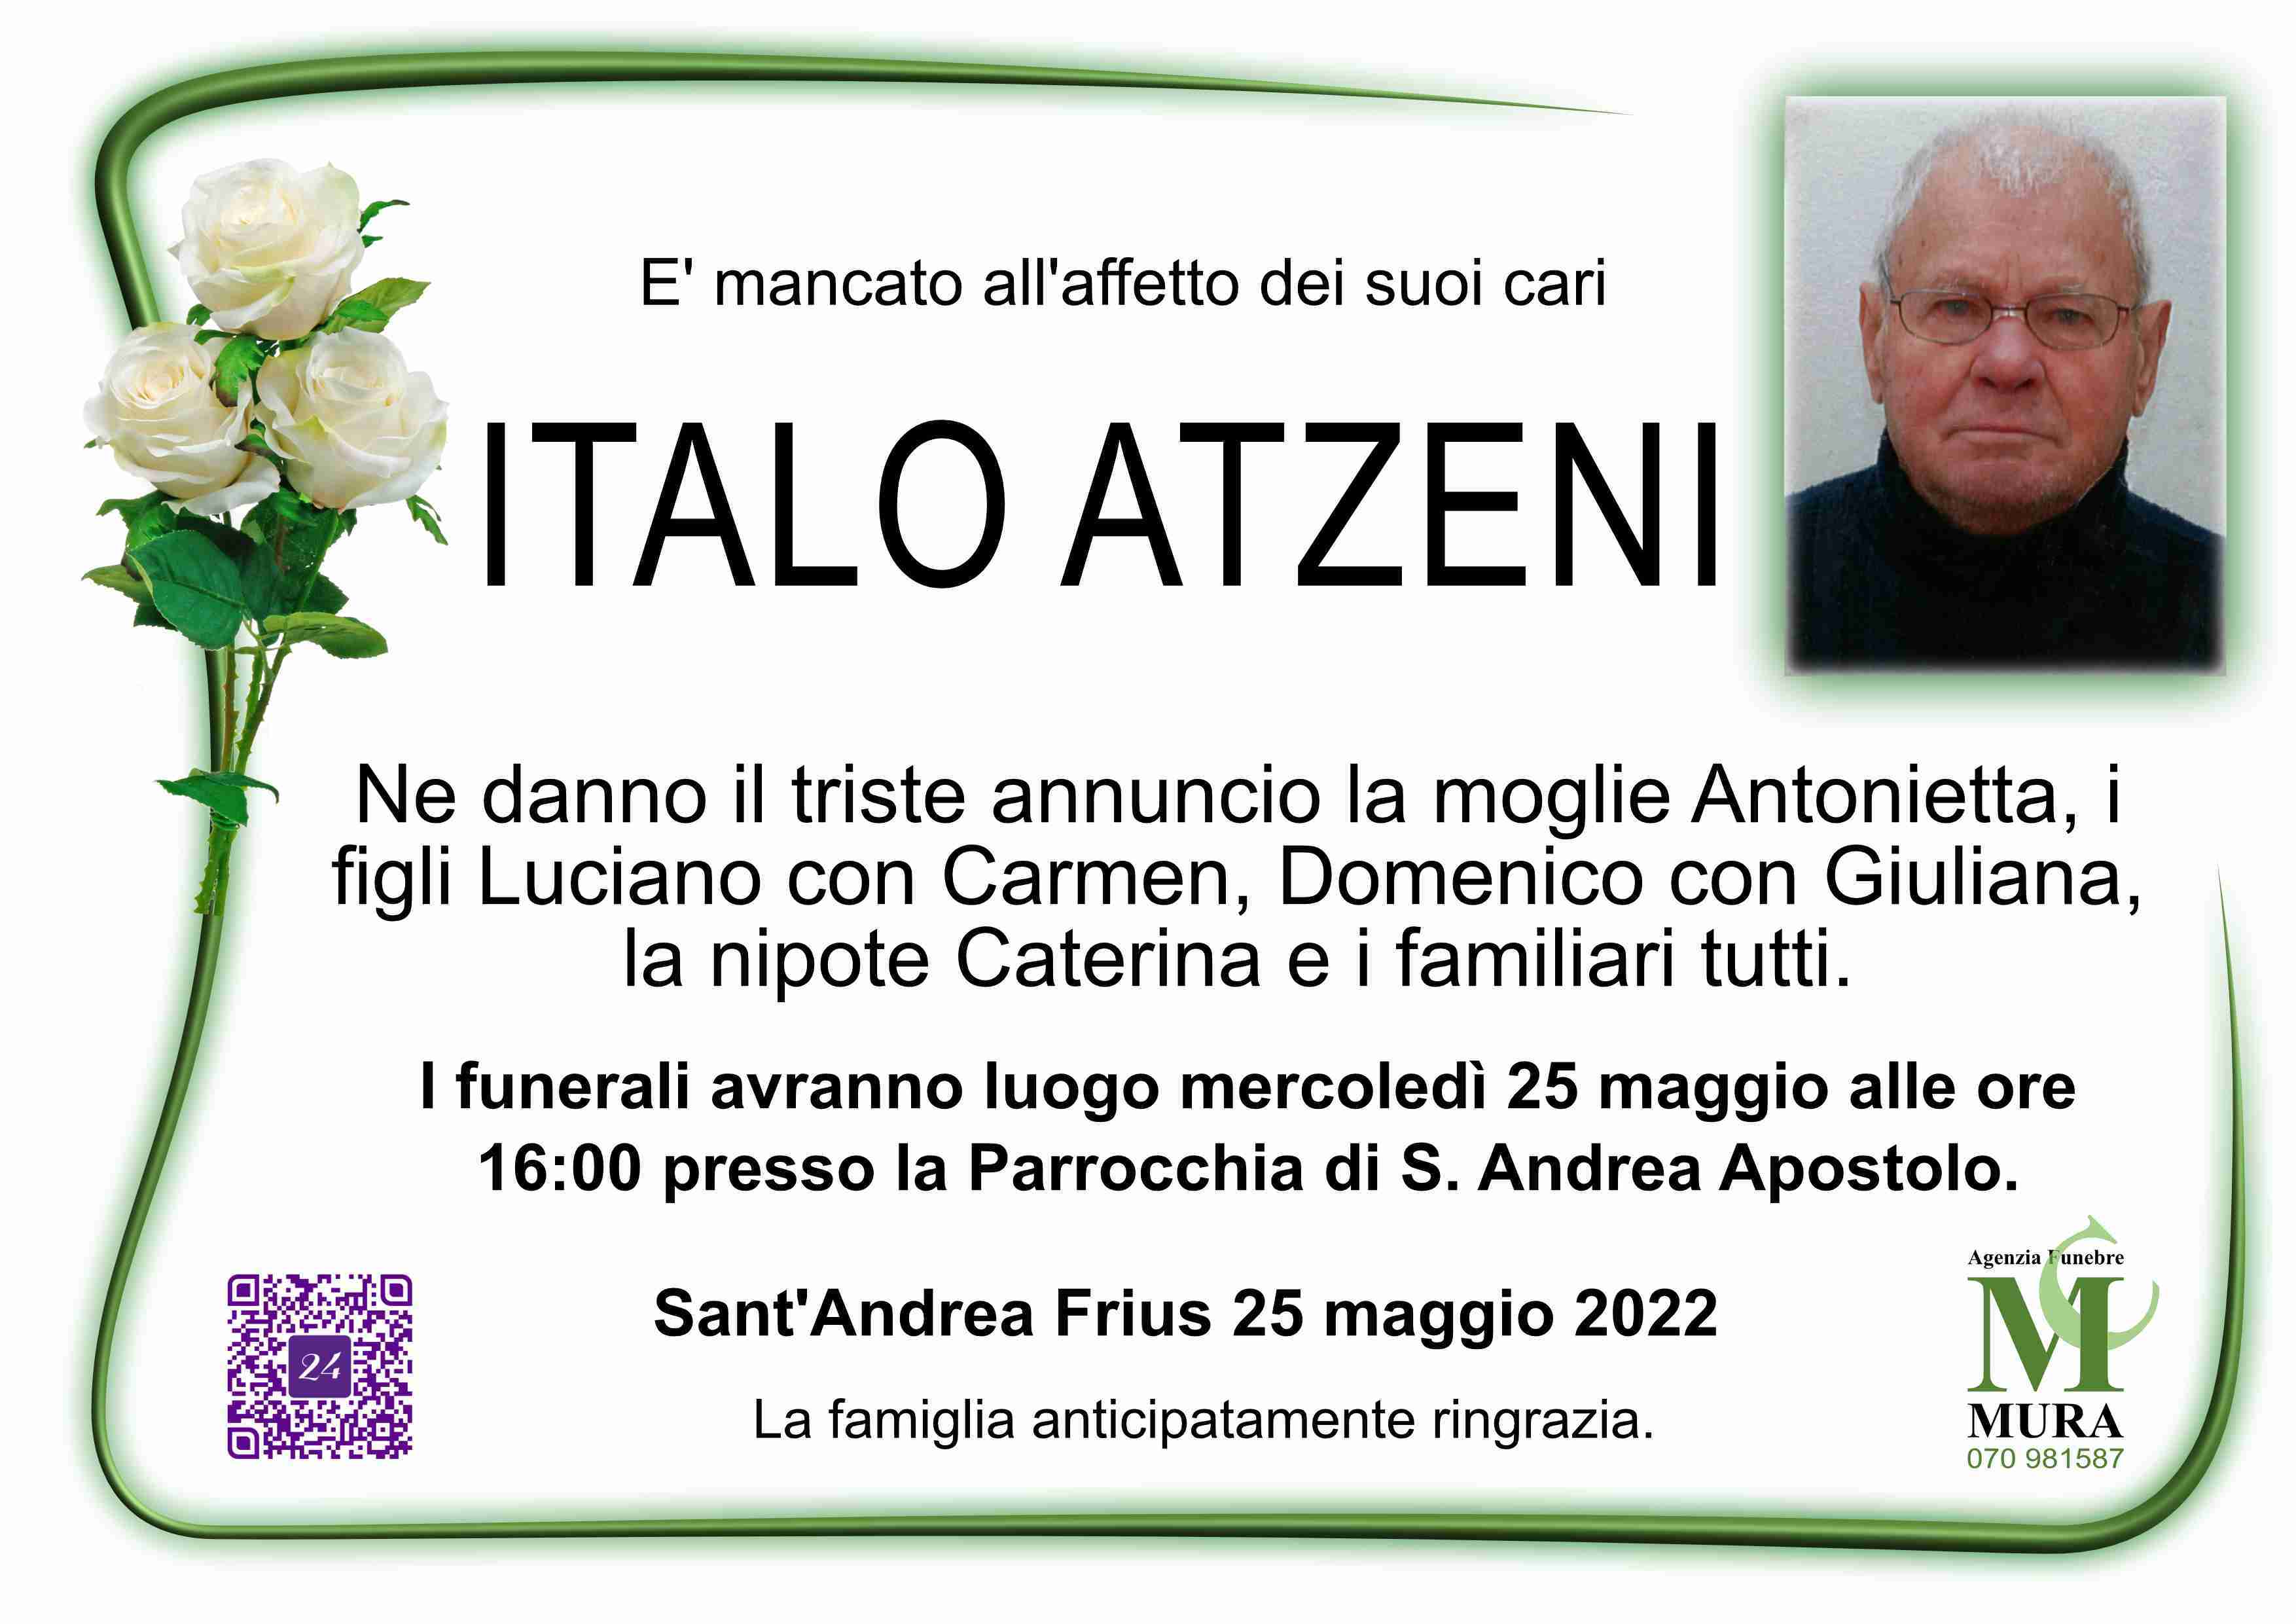 Italo Atzeni